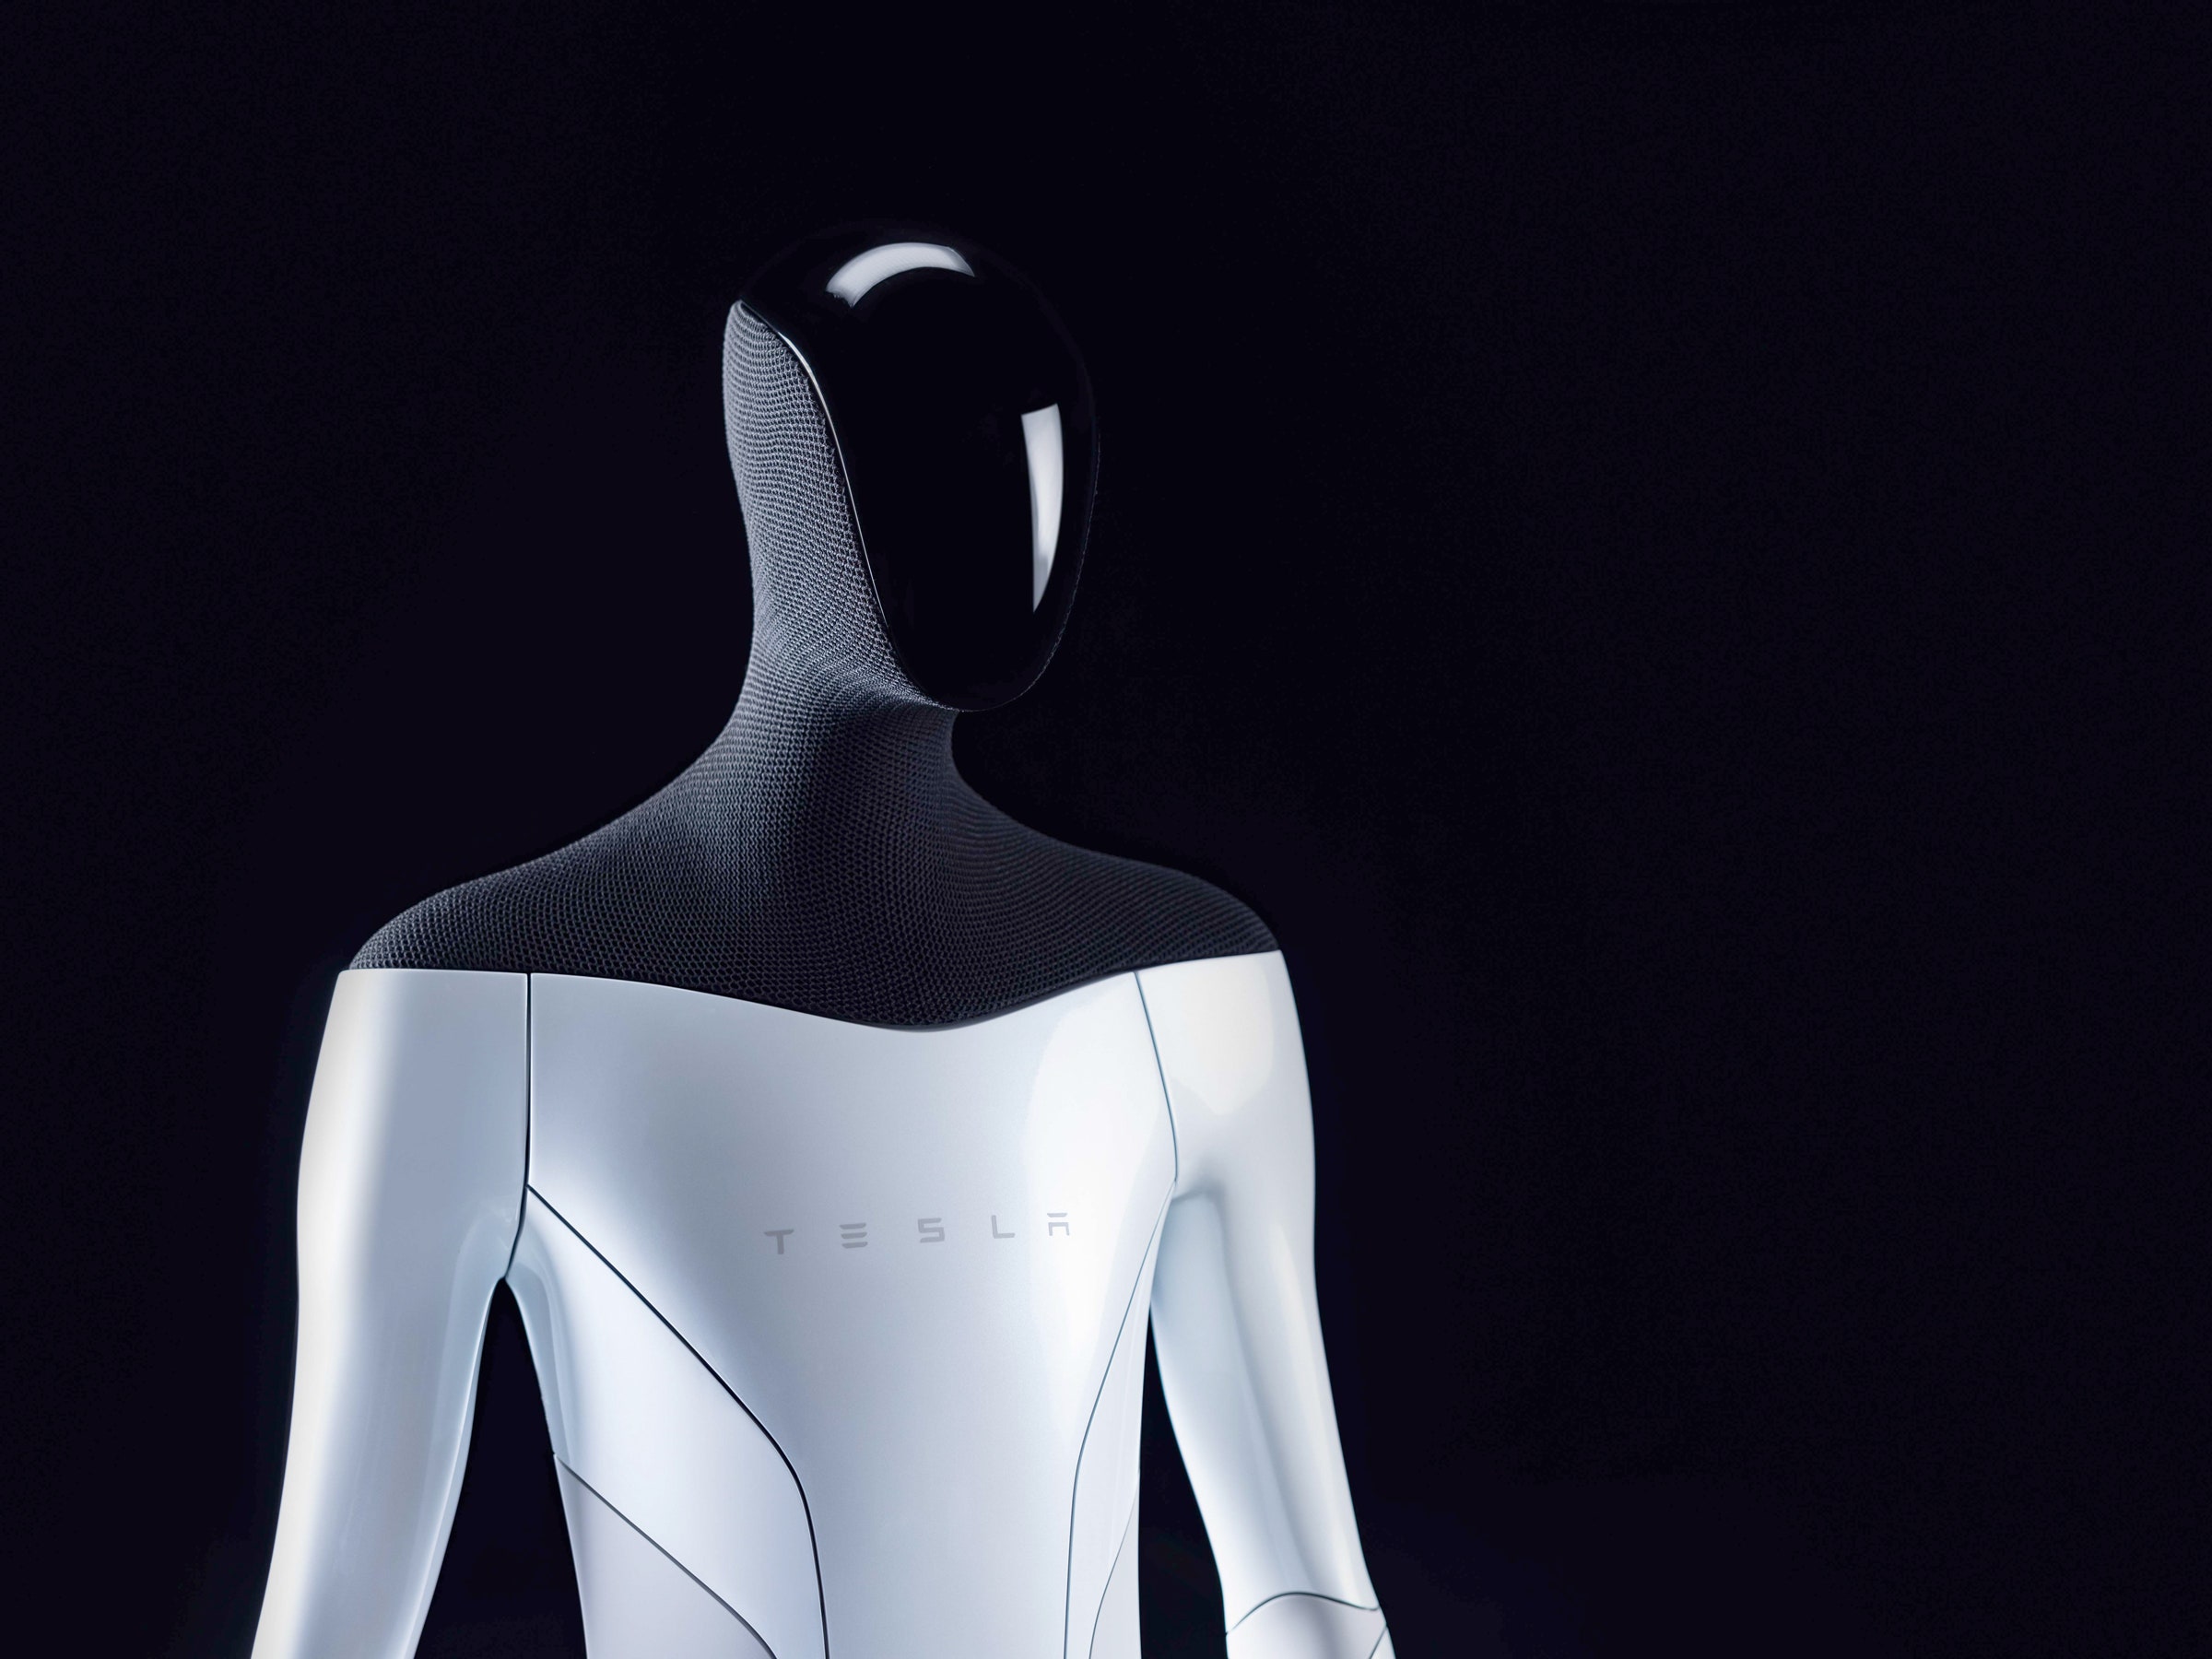 🤖 U veresni Ilon Mask pokaže ljudynopodibnogo robota Tesla Bot